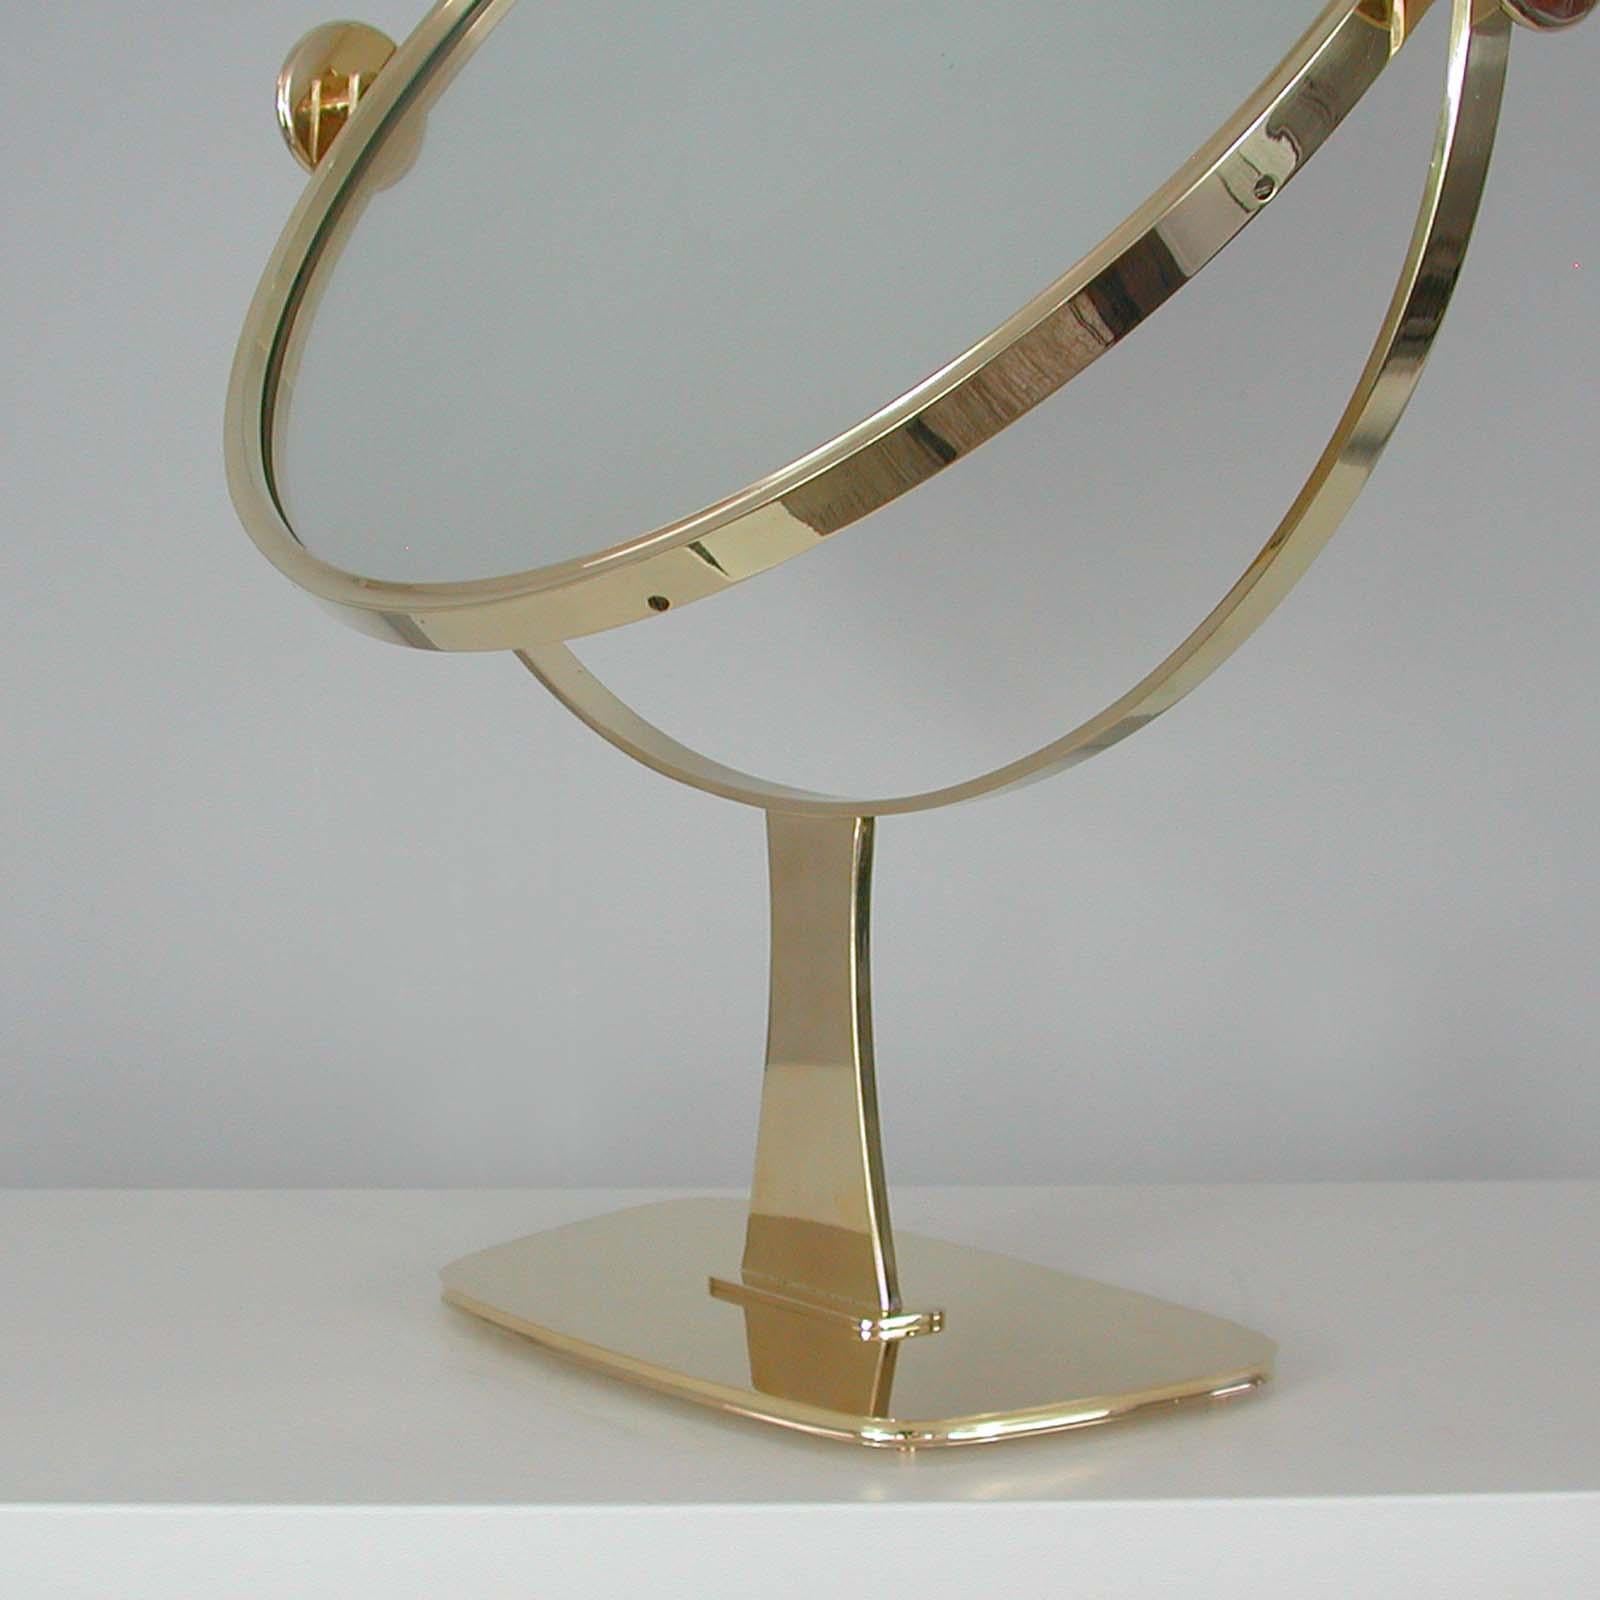 Midcentury German Brass Table Mirror by Vereinigte Werkstätten München, 1960s For Sale 4